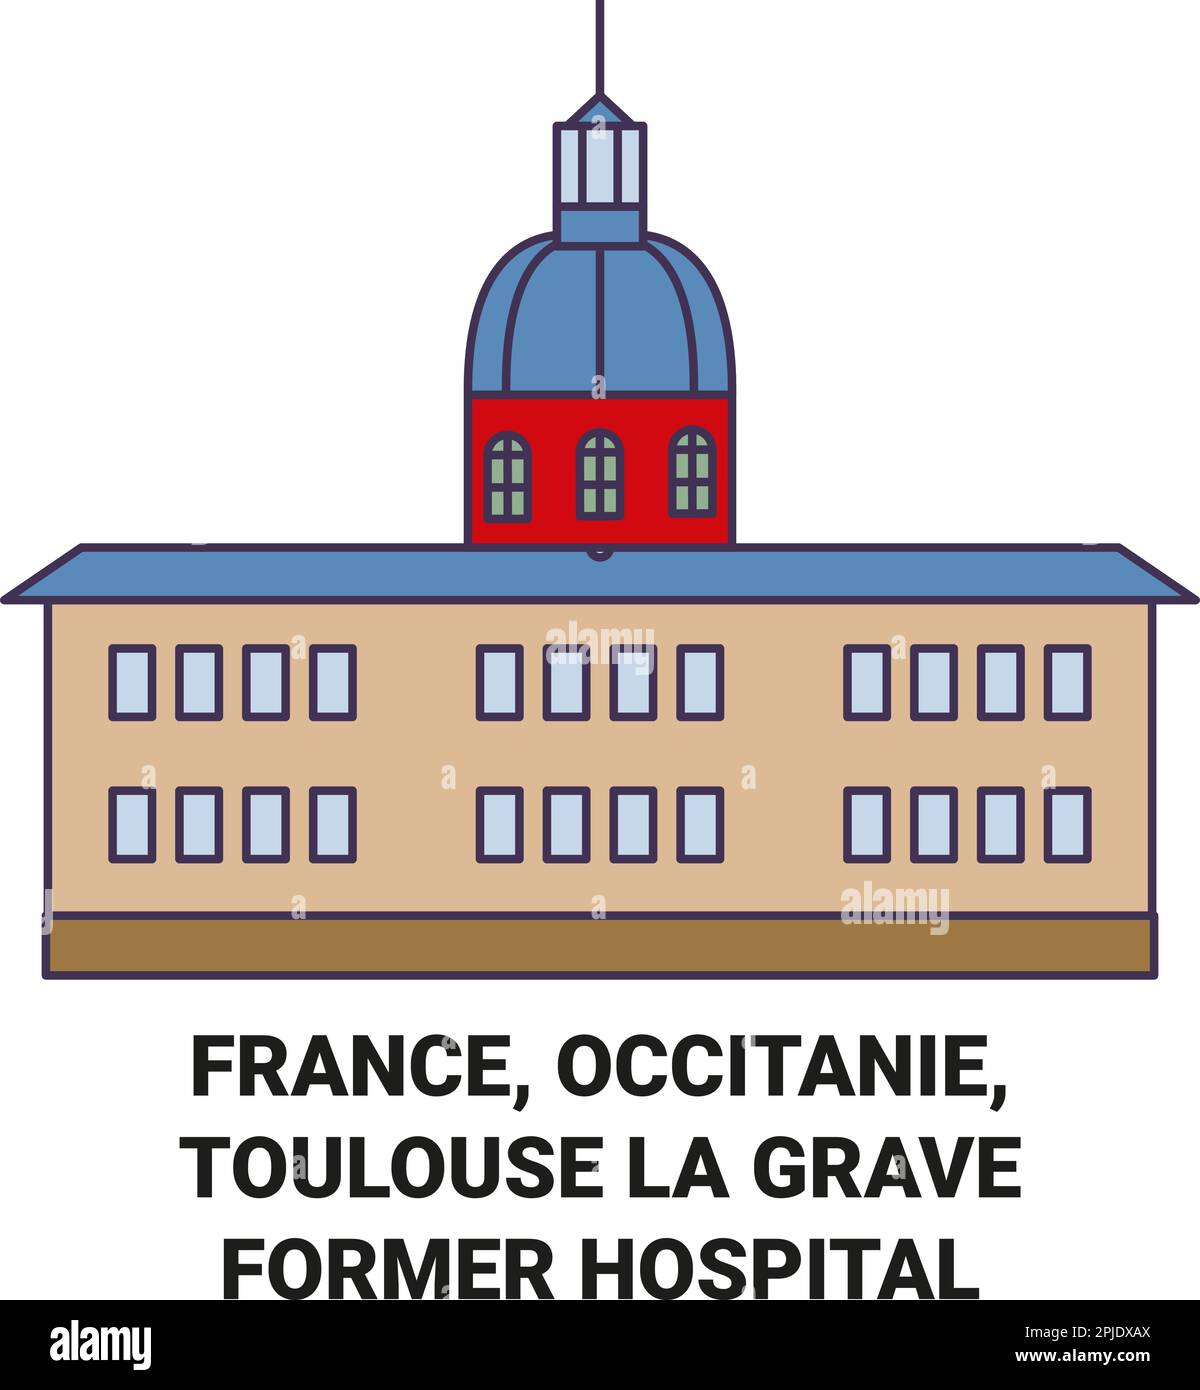 France, Occitanie, Toulouse l'ancien hôpital Voyage scénario illustration Illustration de Vecteur